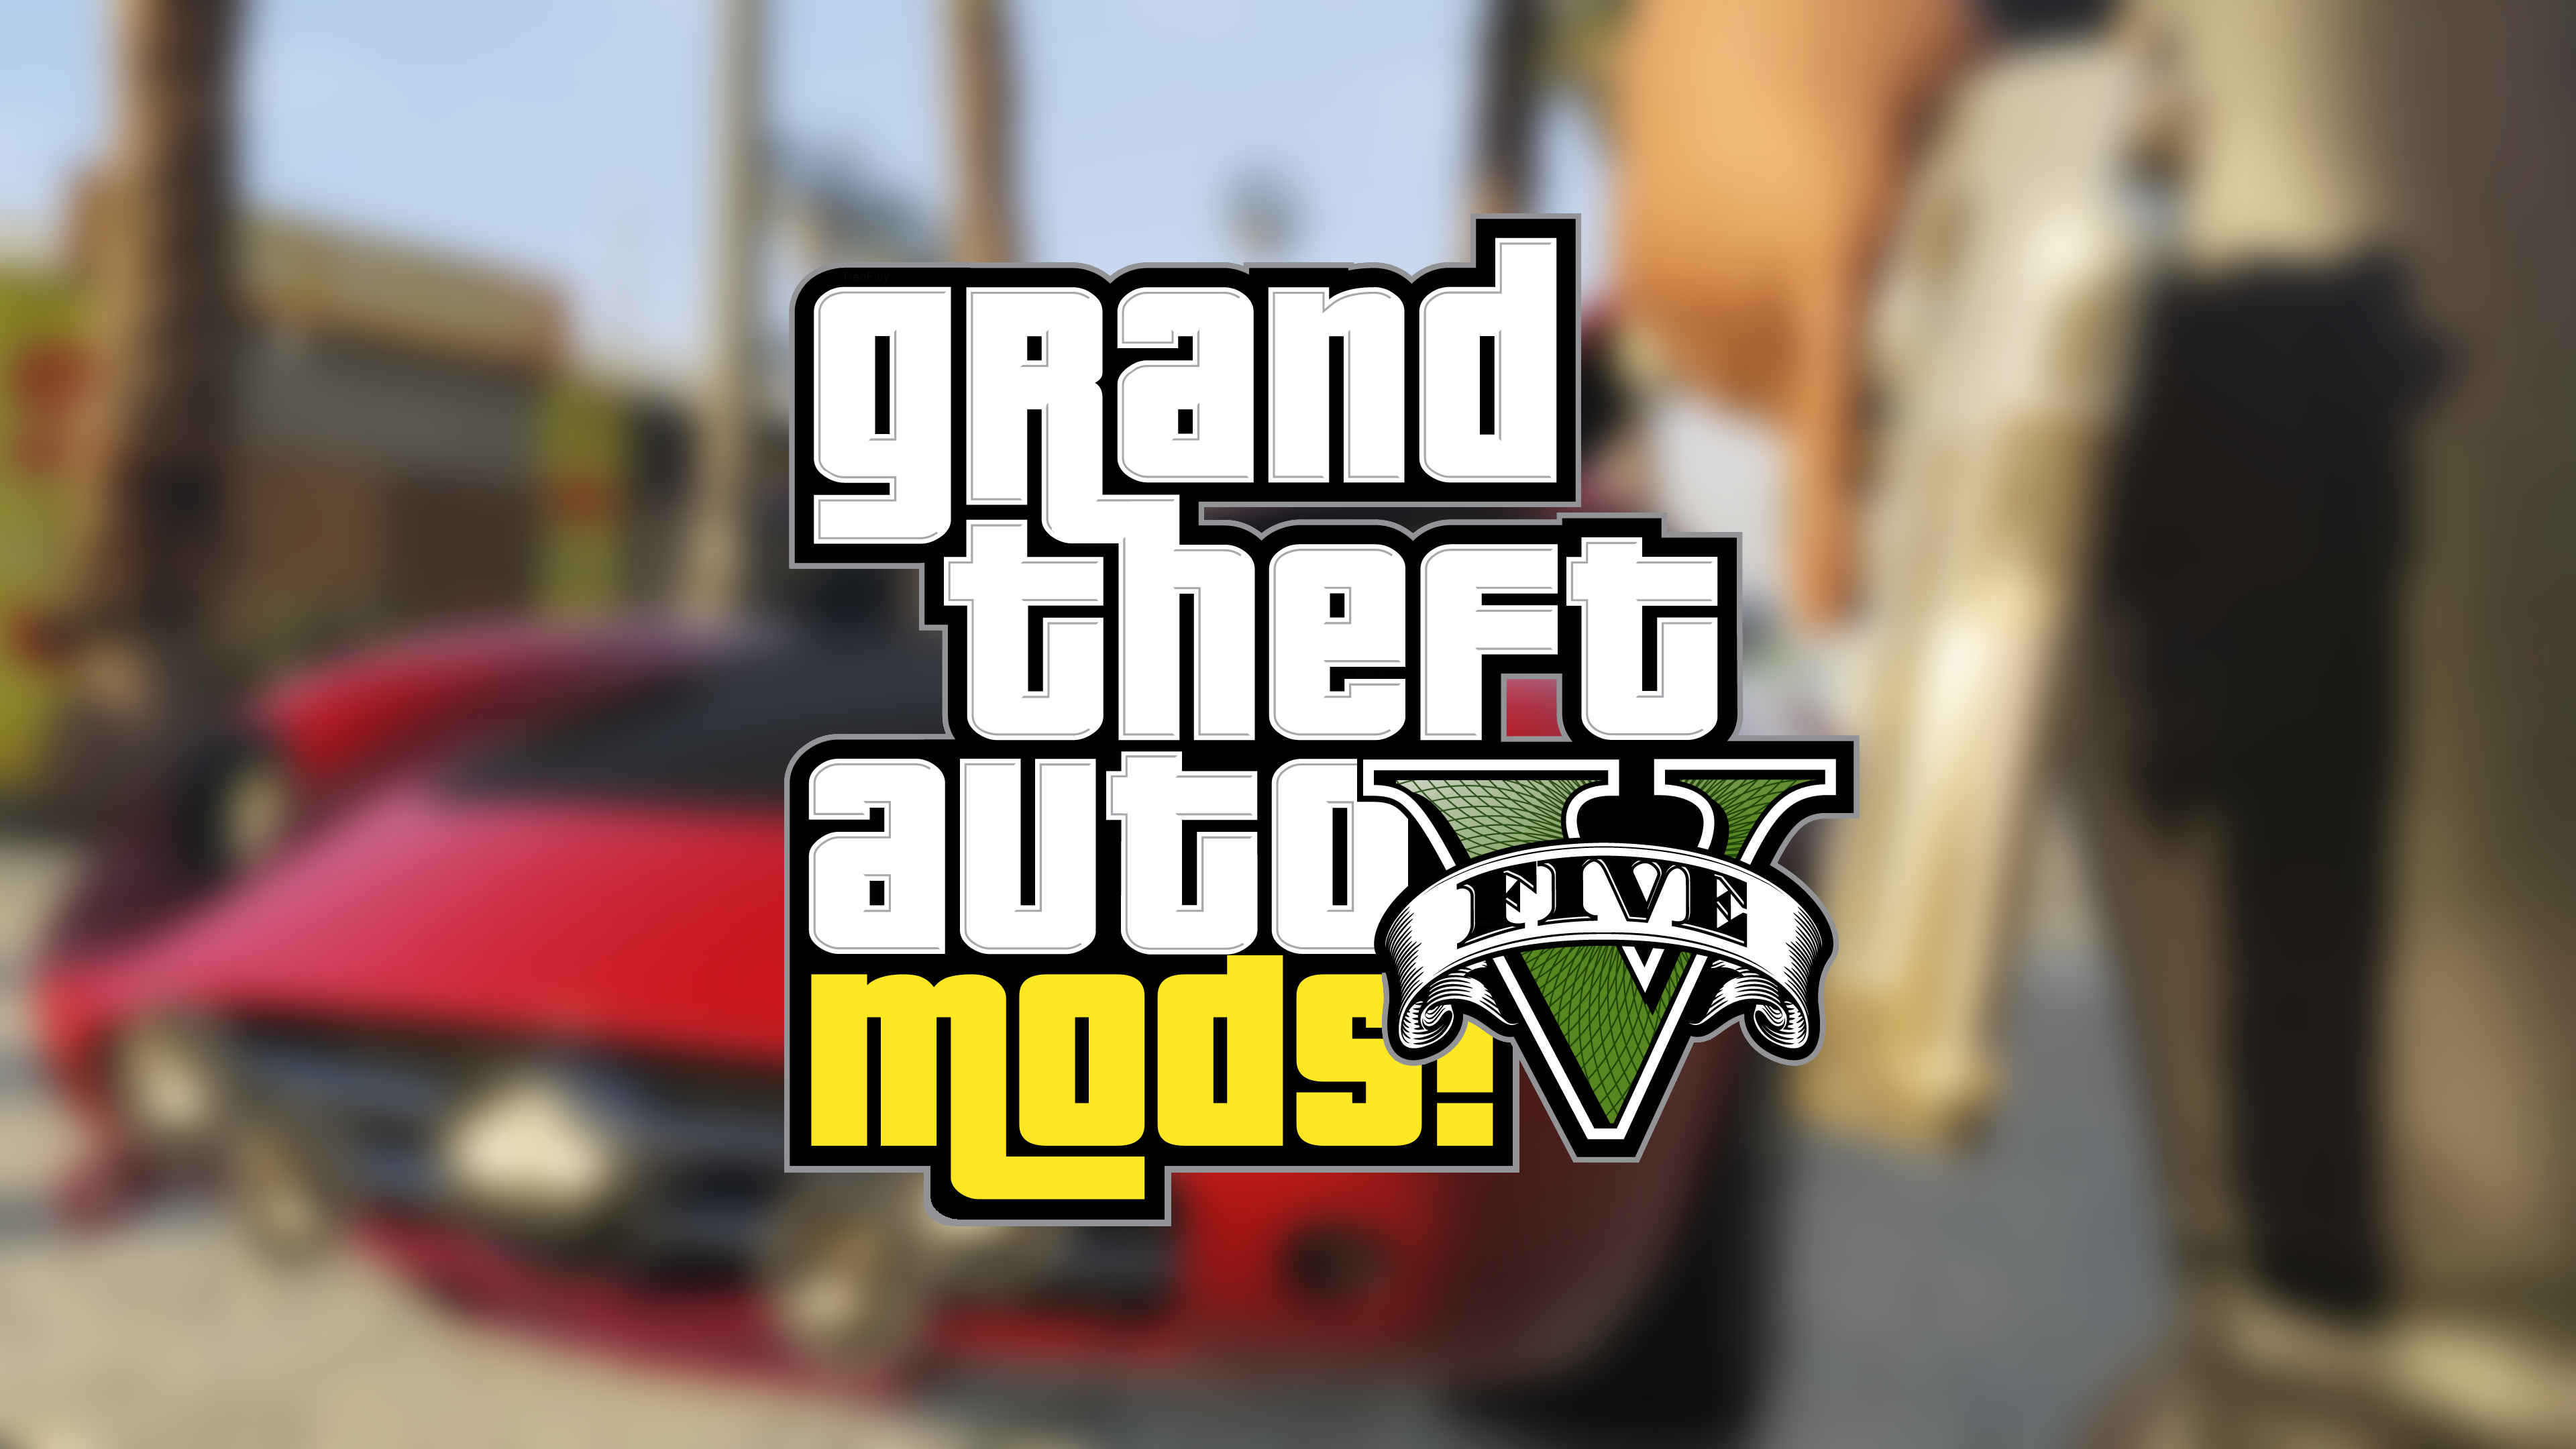 FAQ image - FiveM mod for Grand Theft Auto V - Mod DB